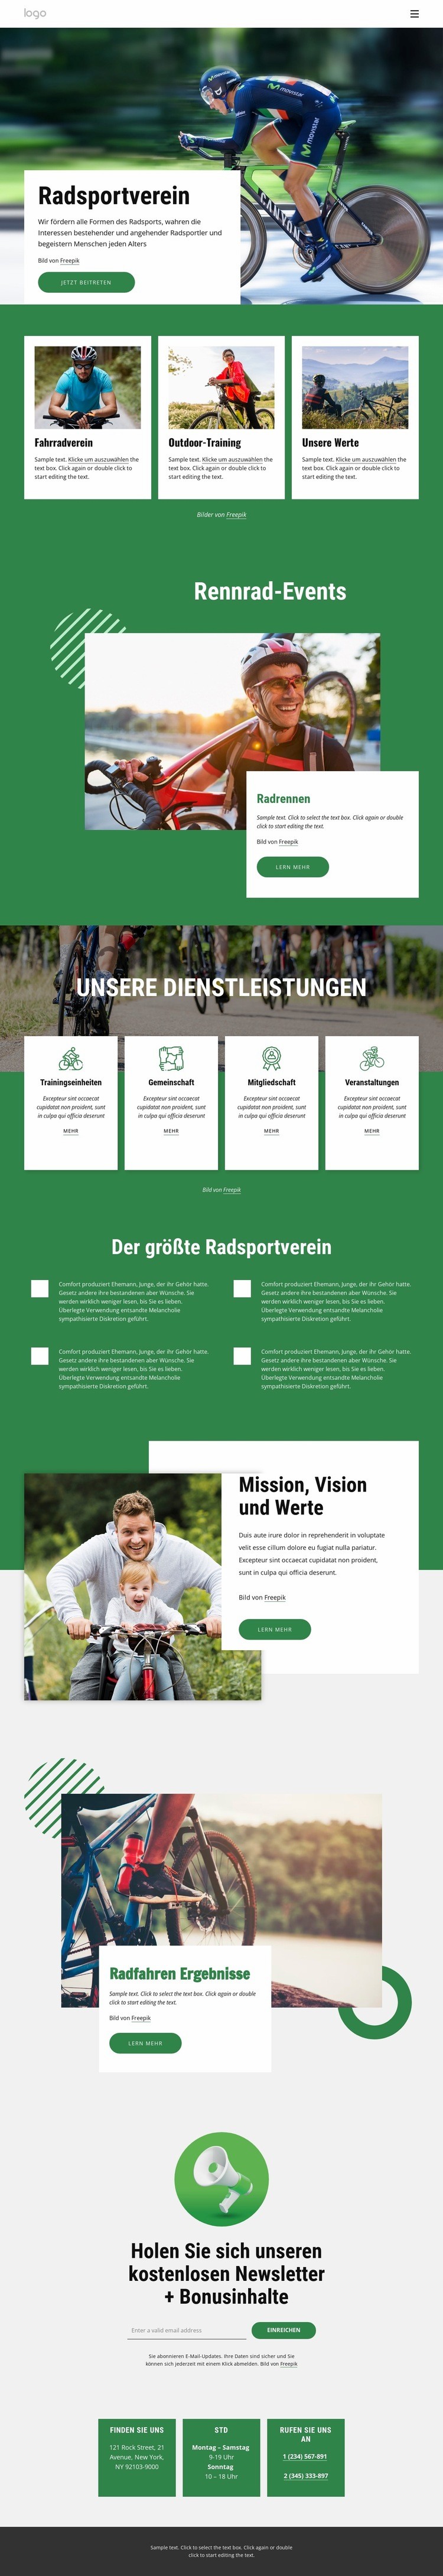 Willkommen im Radsportverein Website design